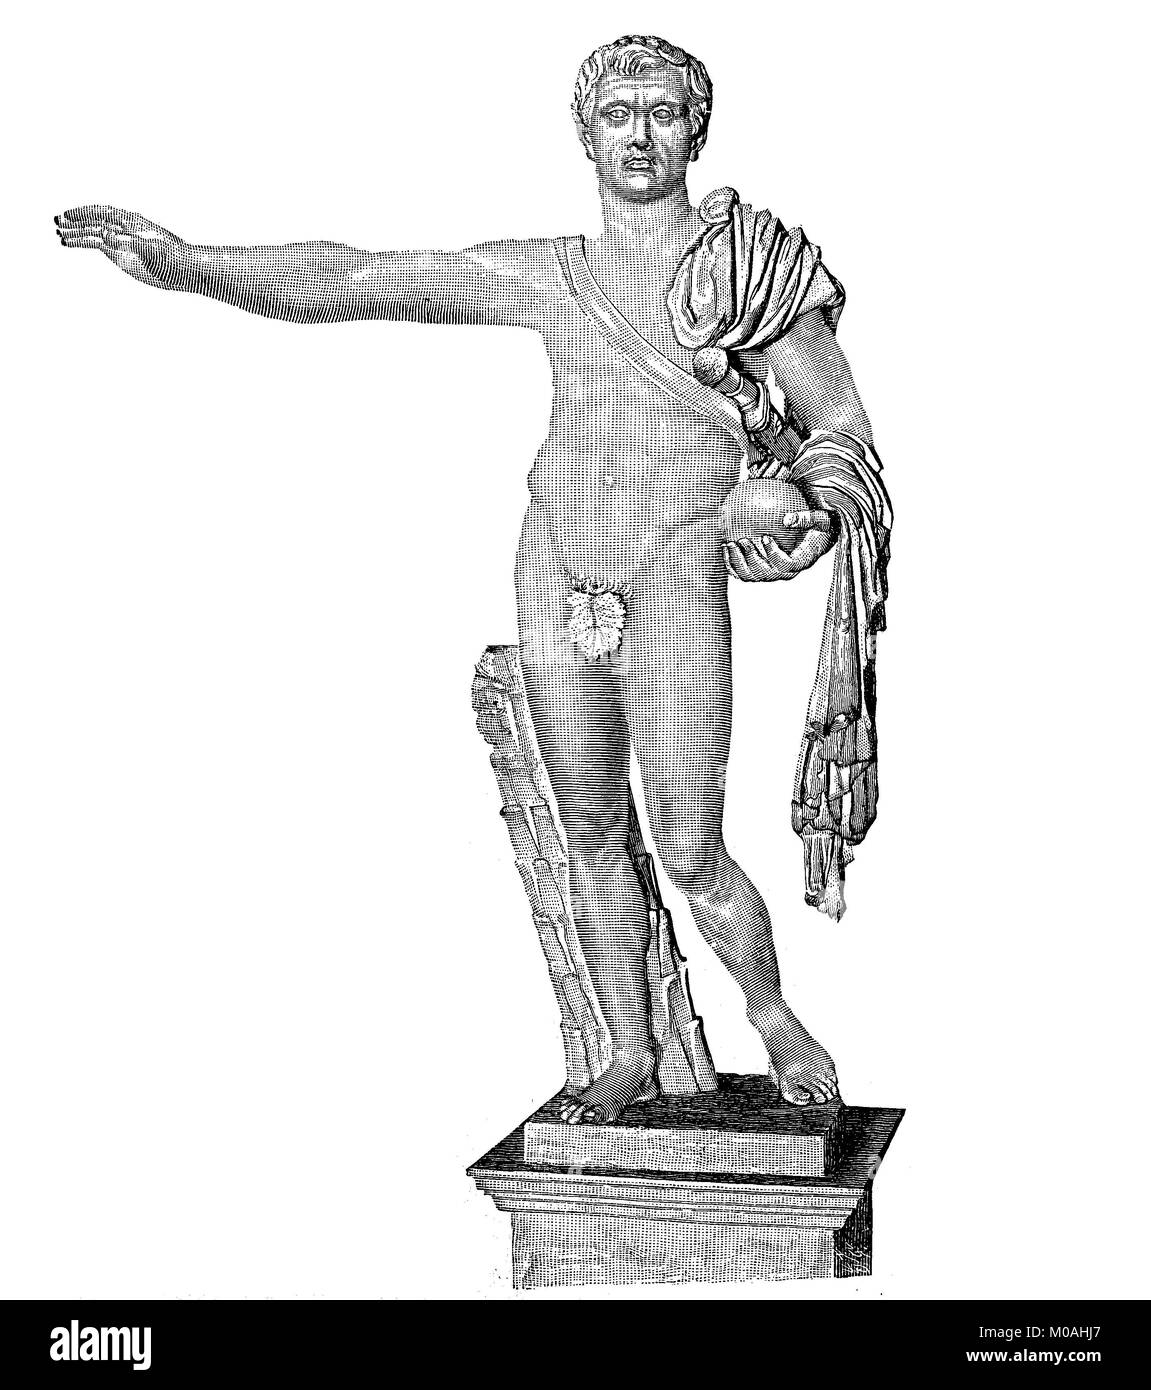 La statue de Pompey se trouve dans le Palazzo Spada à Rome, Italie, César a été assassiné à ses pieds, le 15 mars 44 AV numérique, l'amélioration de la reproduction d'un original de l'année 1880 Banque D'Images